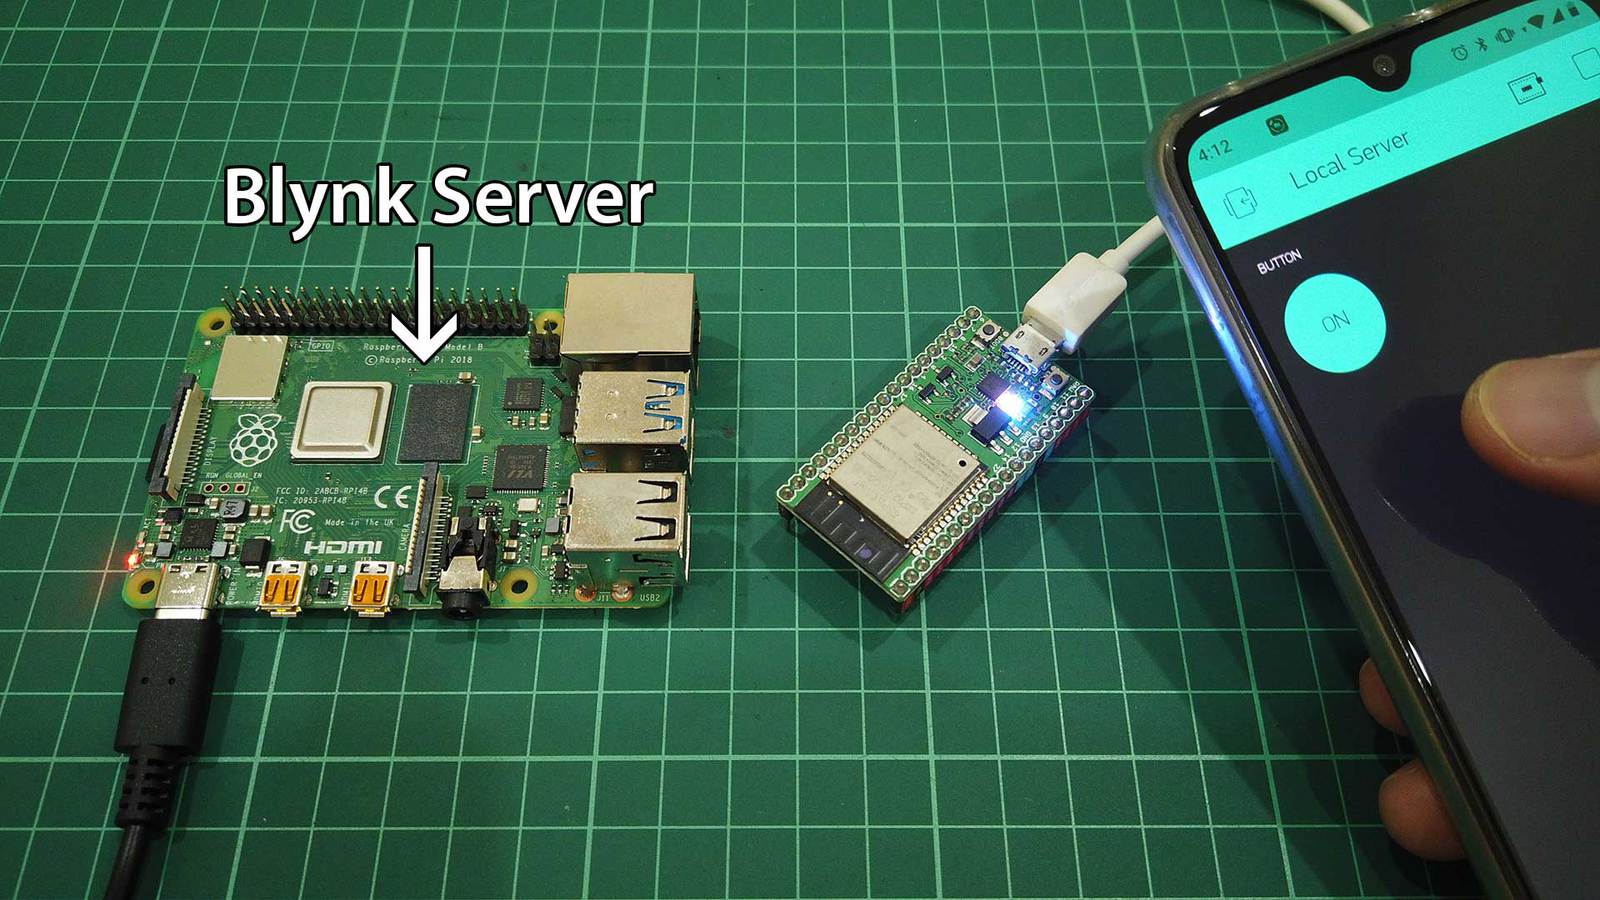 Install Blynk Server on Raspberry Pi